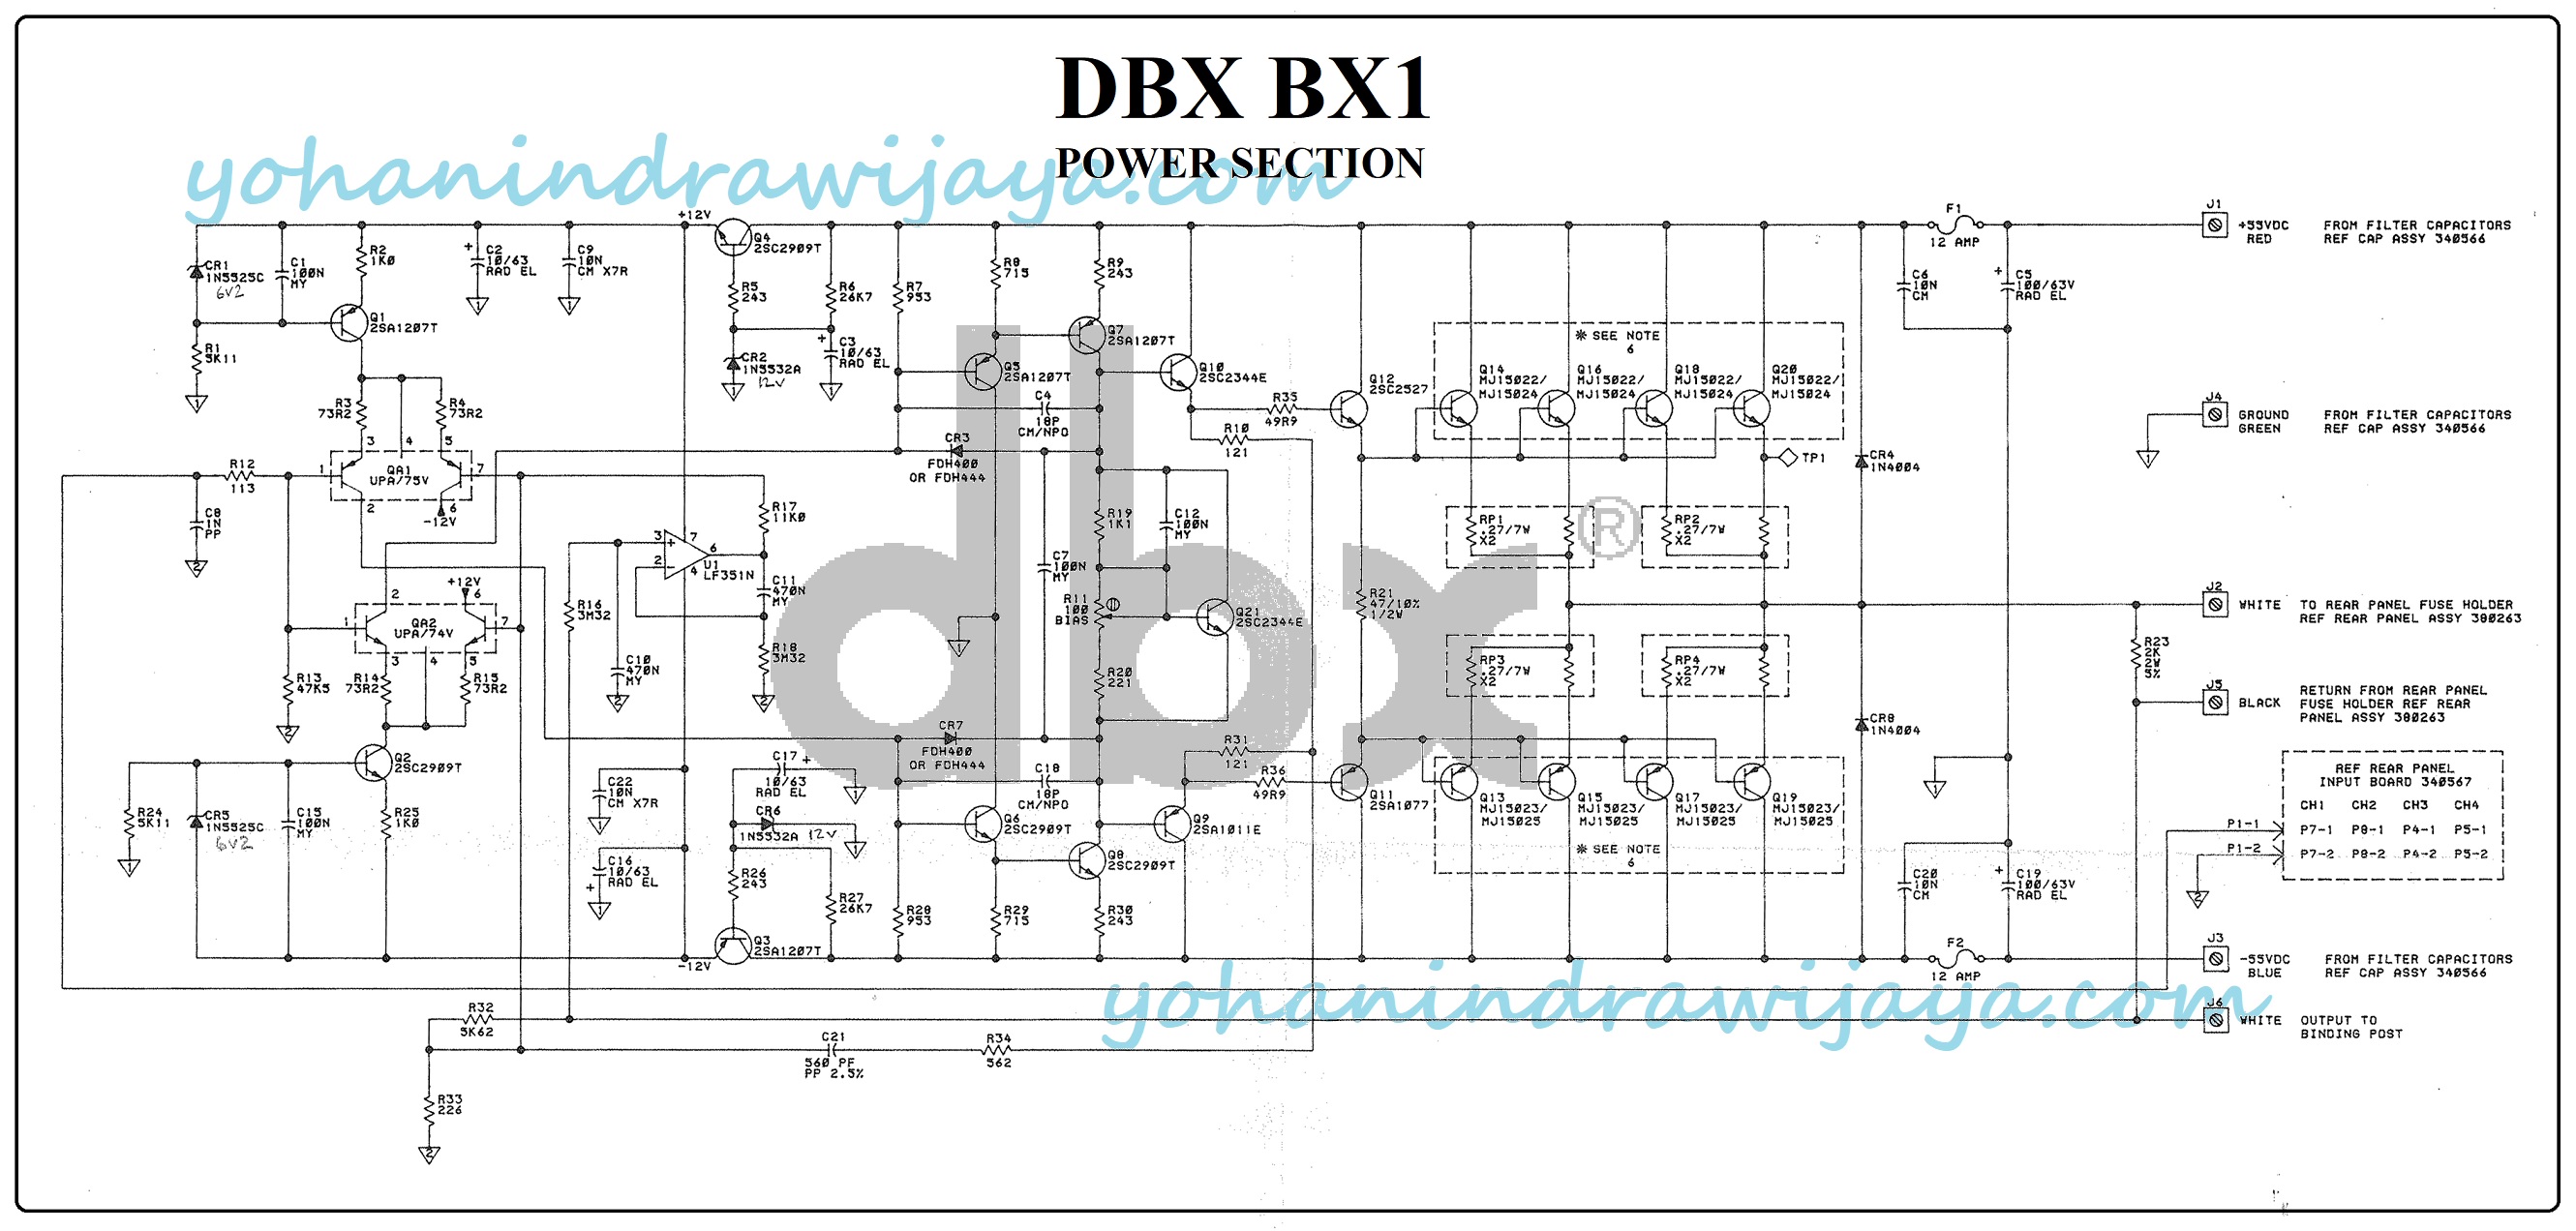 OCL 400 WATT DBX BX1